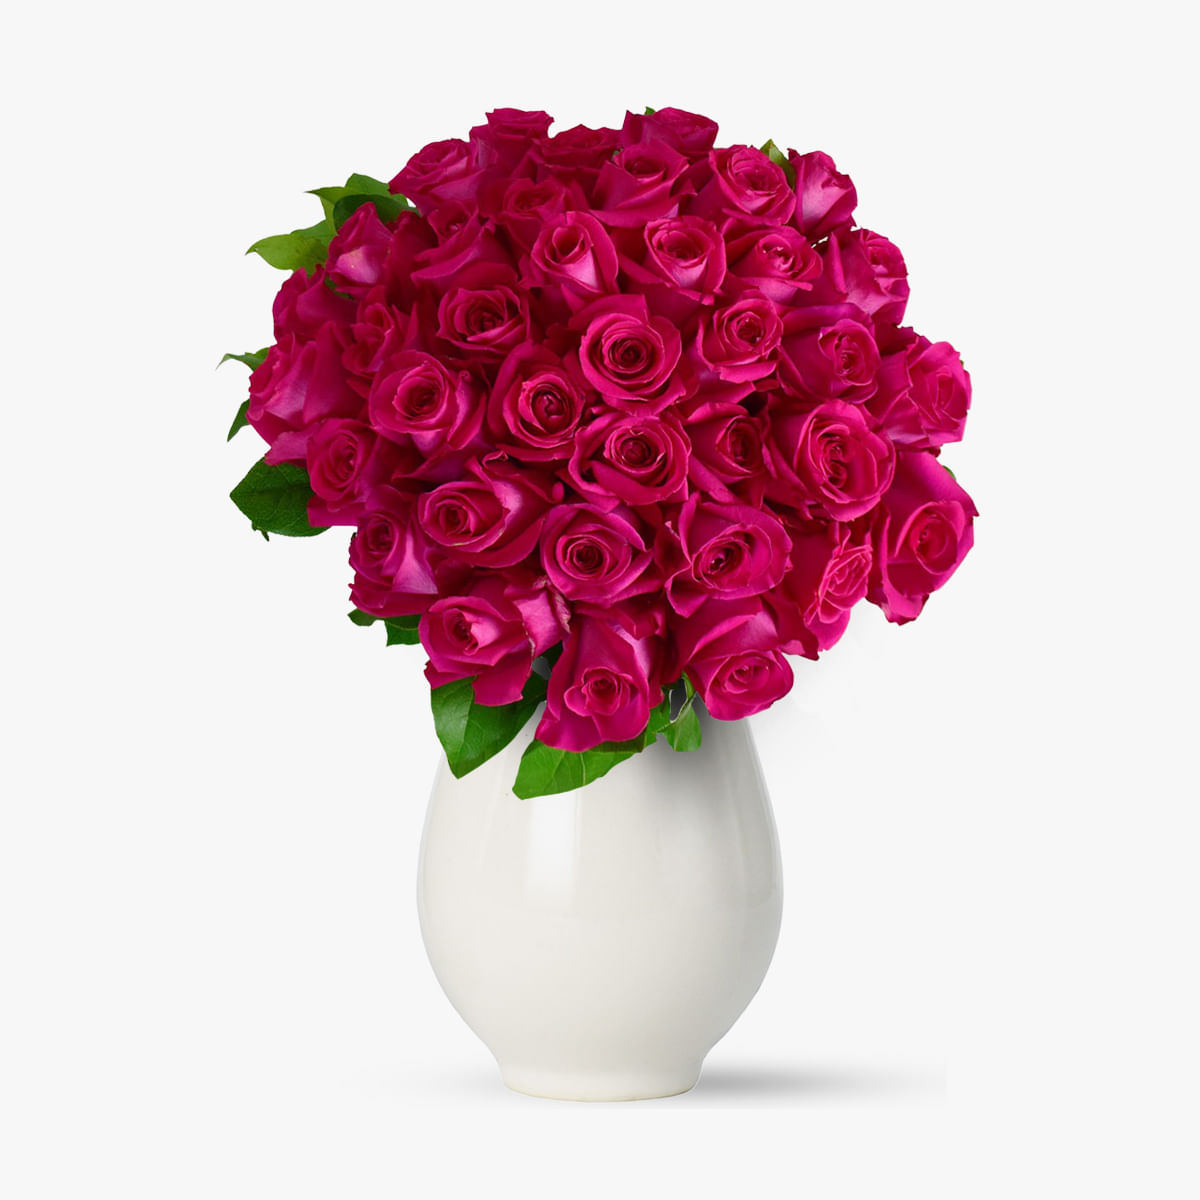 Buchet de 51 trandafiri roz Floria imagine 2022